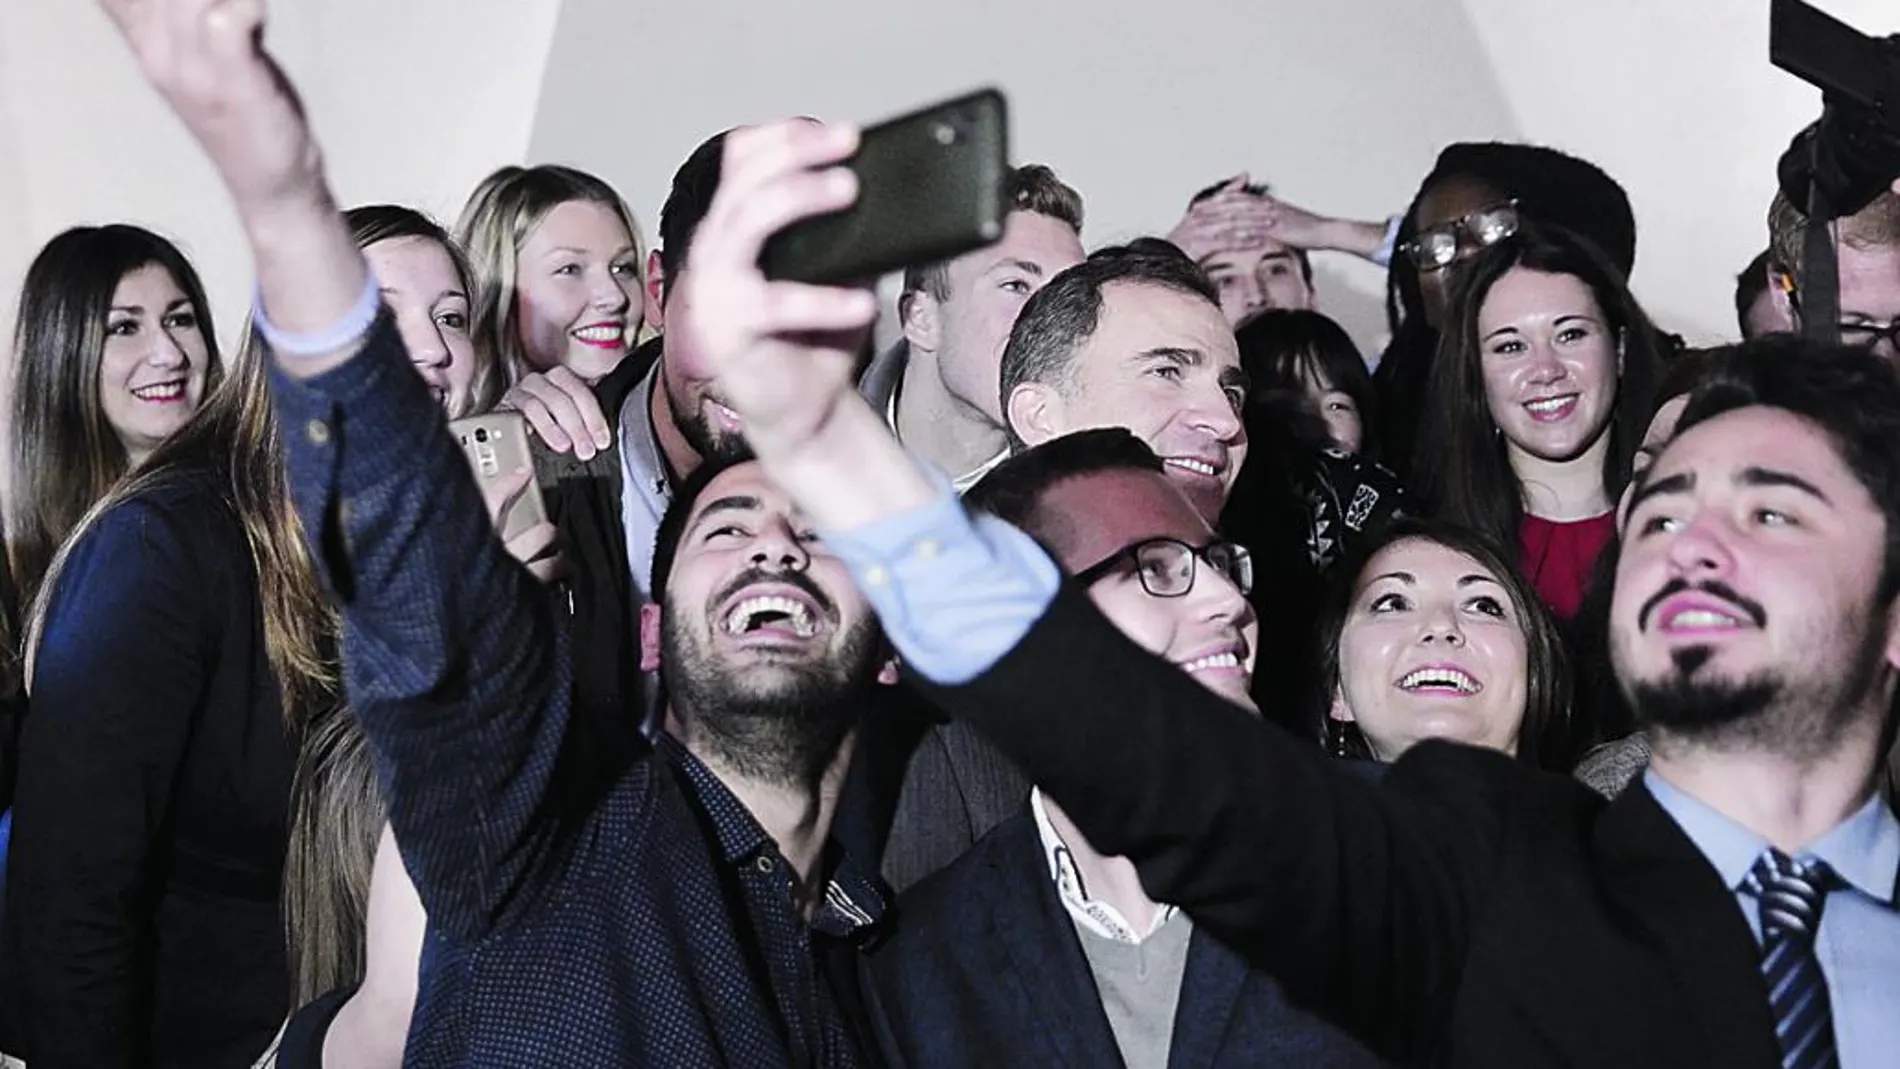 Felipe VI, rodeado de jóvenes que quieren hacerse una foto con él